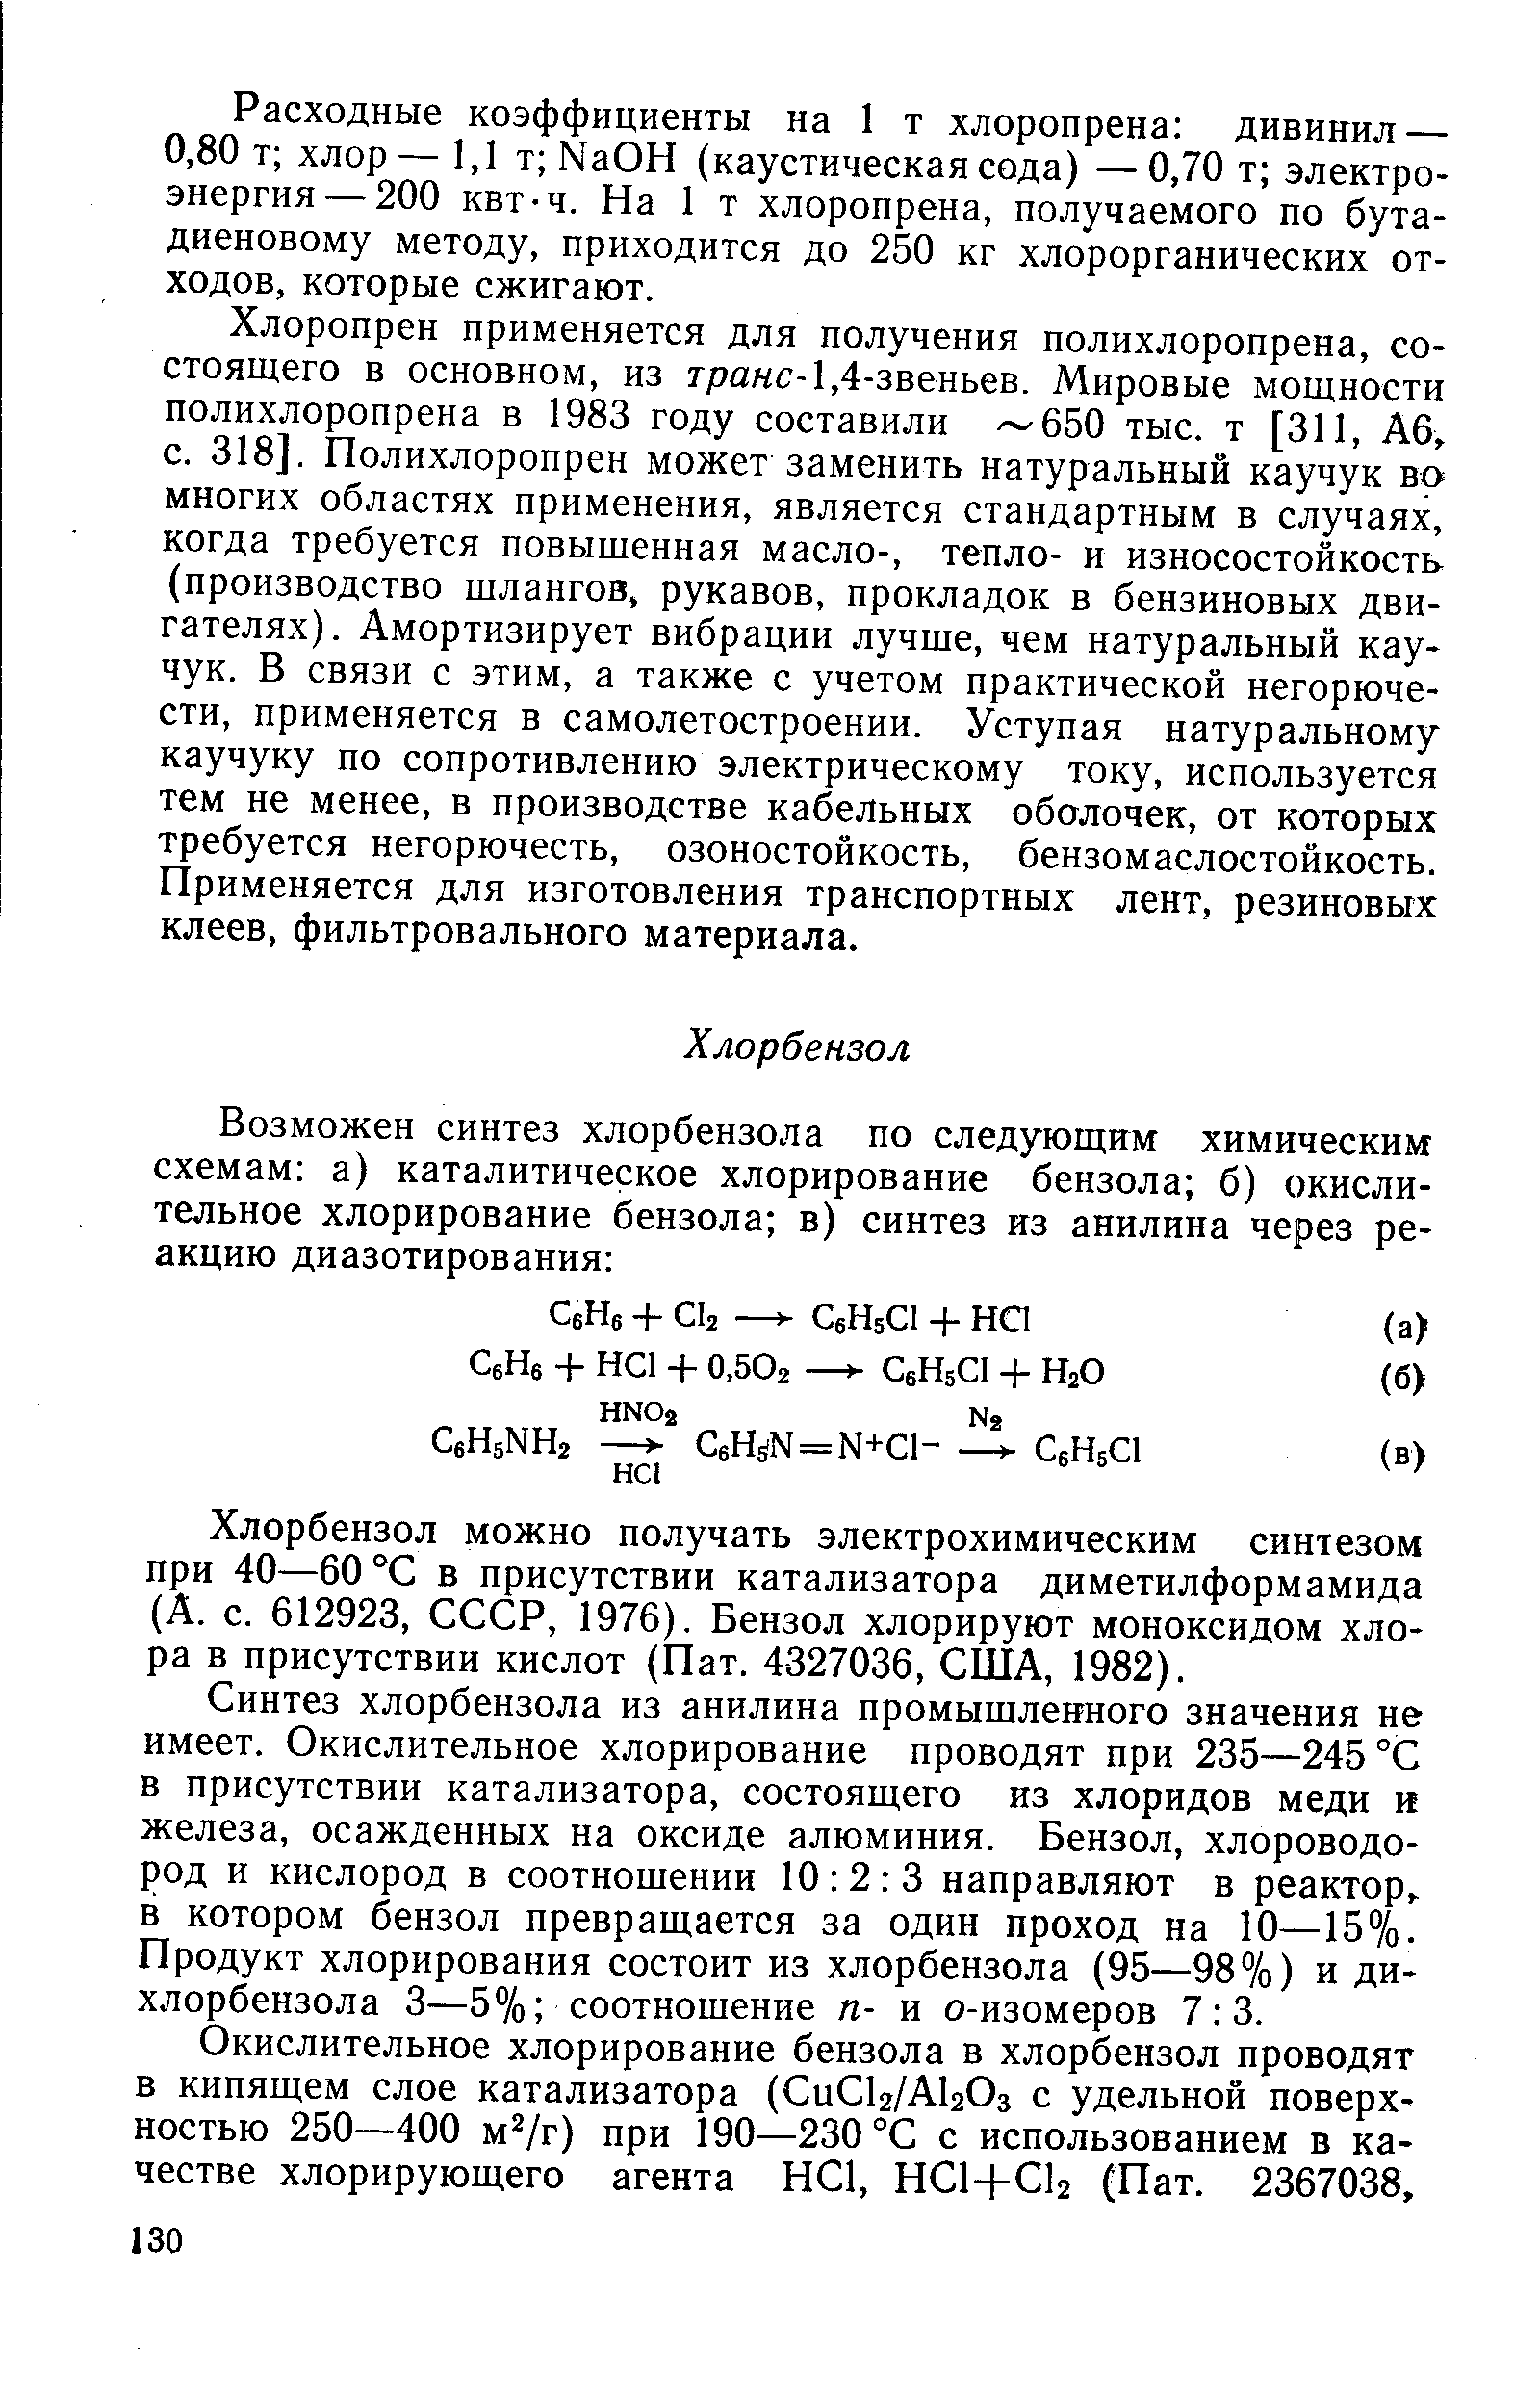 Хлорбензол можно получать электрохимическим синтезом при 40—60 °С в присутствии катализатора диметилформамида (А. с. 612923, СССР, 1976). Бензол хлорируют моноксидом хлора в присутствии кислот (Пат. 4327036, США, 1982).